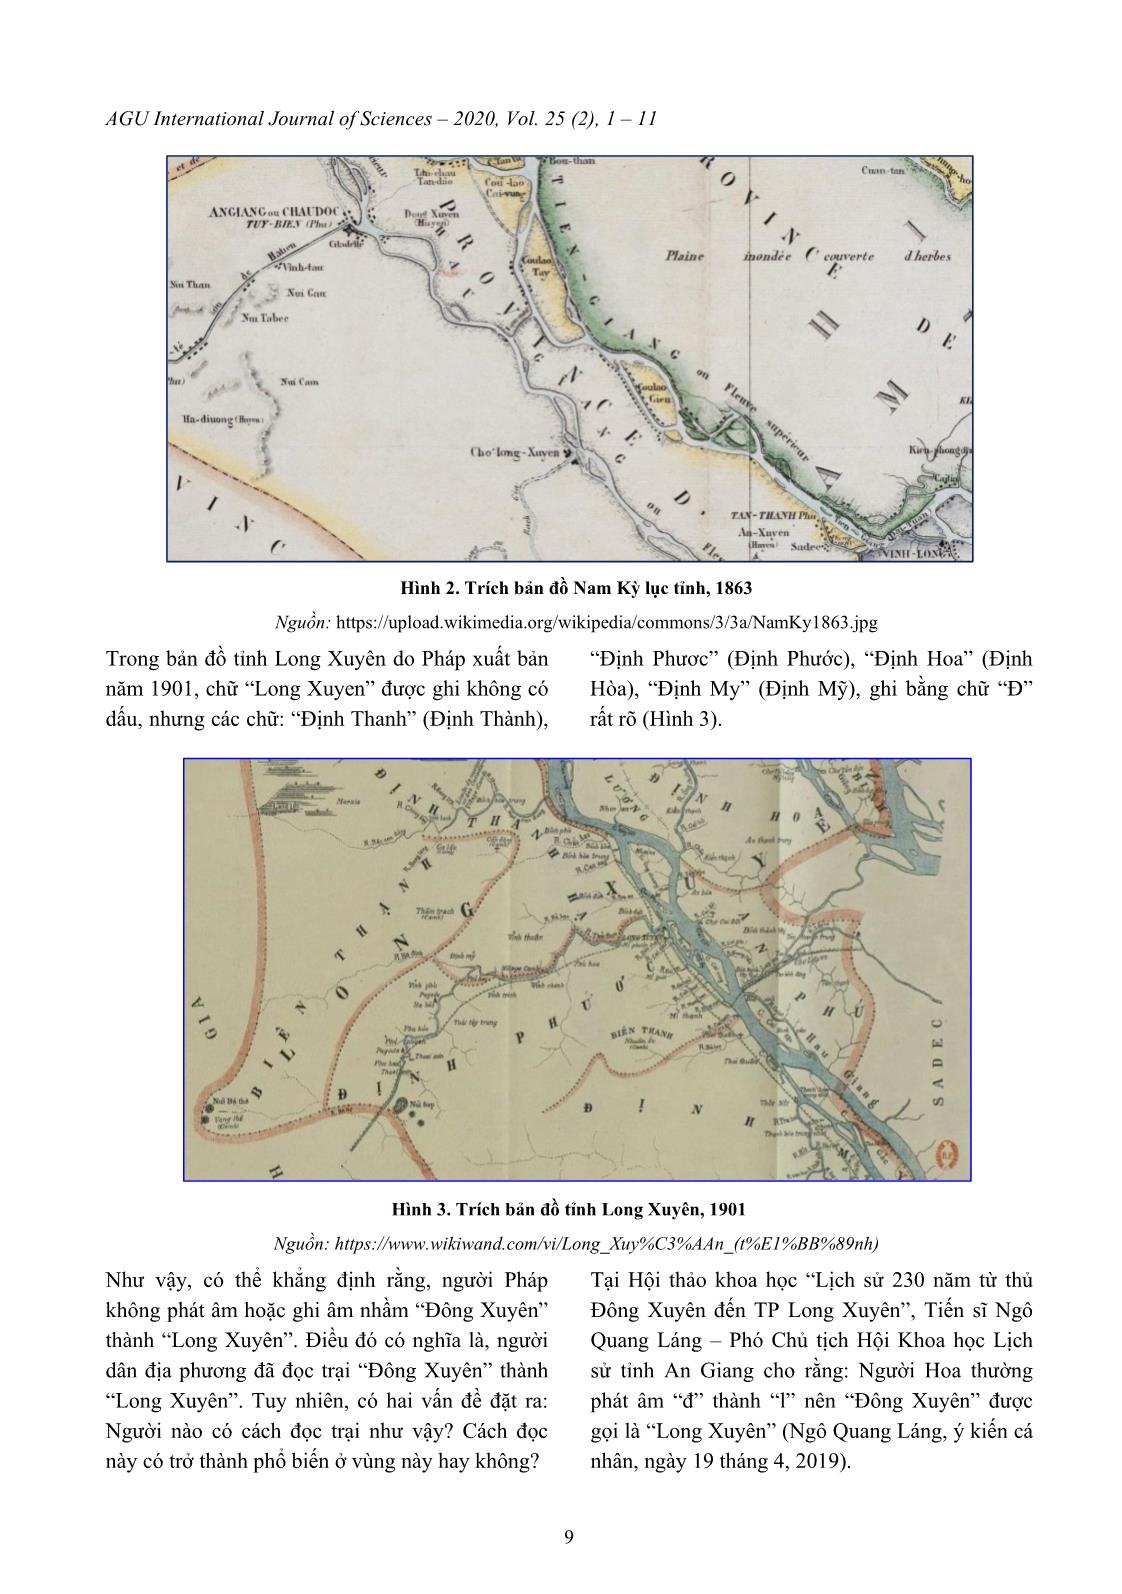 Tìm hiểu nguồn gốc và ý nghĩa của địa danh “Long Xuyên” ở tỉnh An Giang trang 9